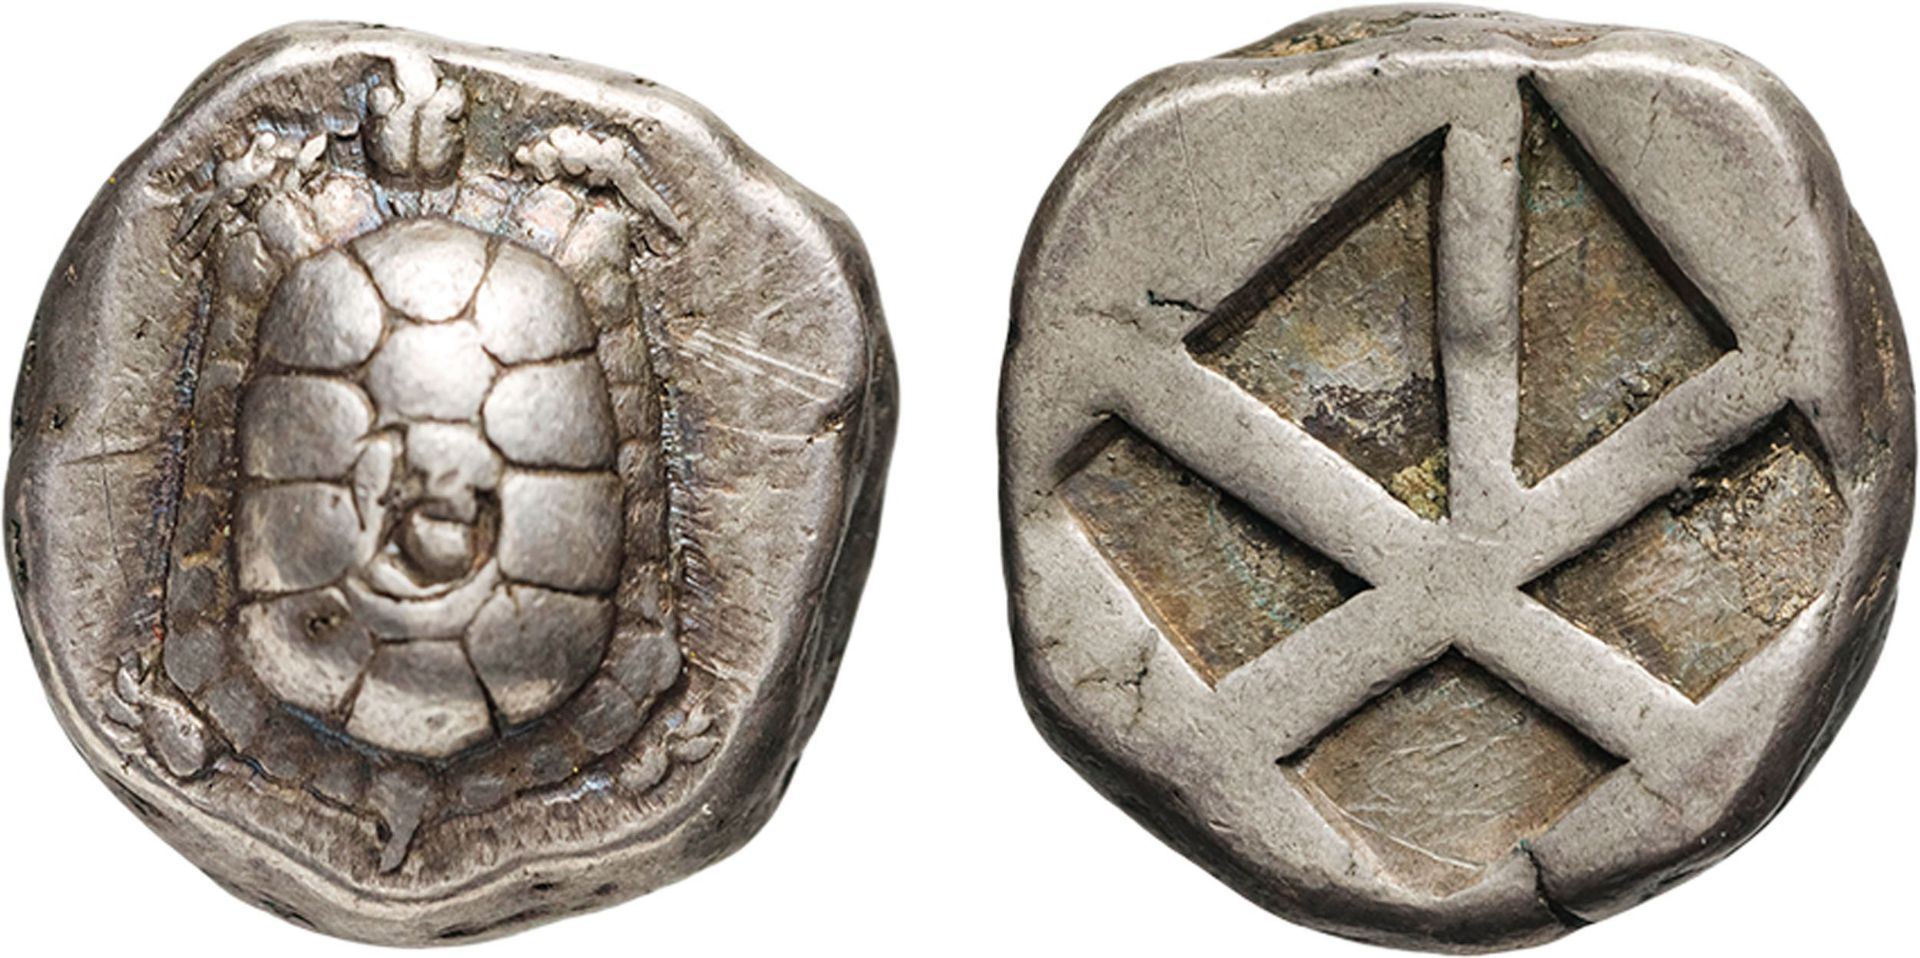 MONETE GRECHE. EGINA (CIRCA 456-431 A.C.). STATERE